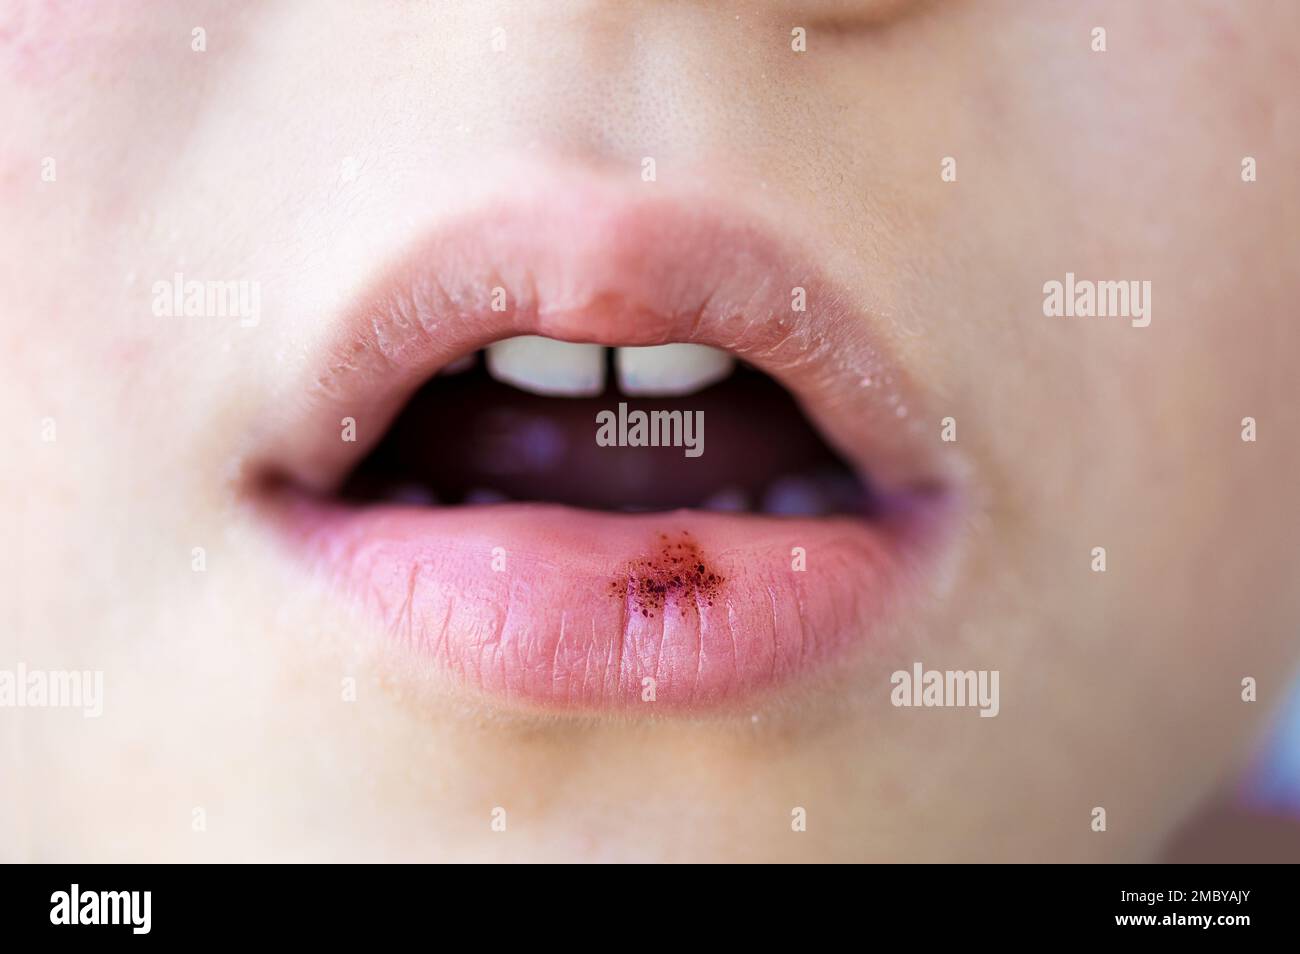 Sangue delle labbra immagini e fotografie stock ad alta risoluzione - Alamy